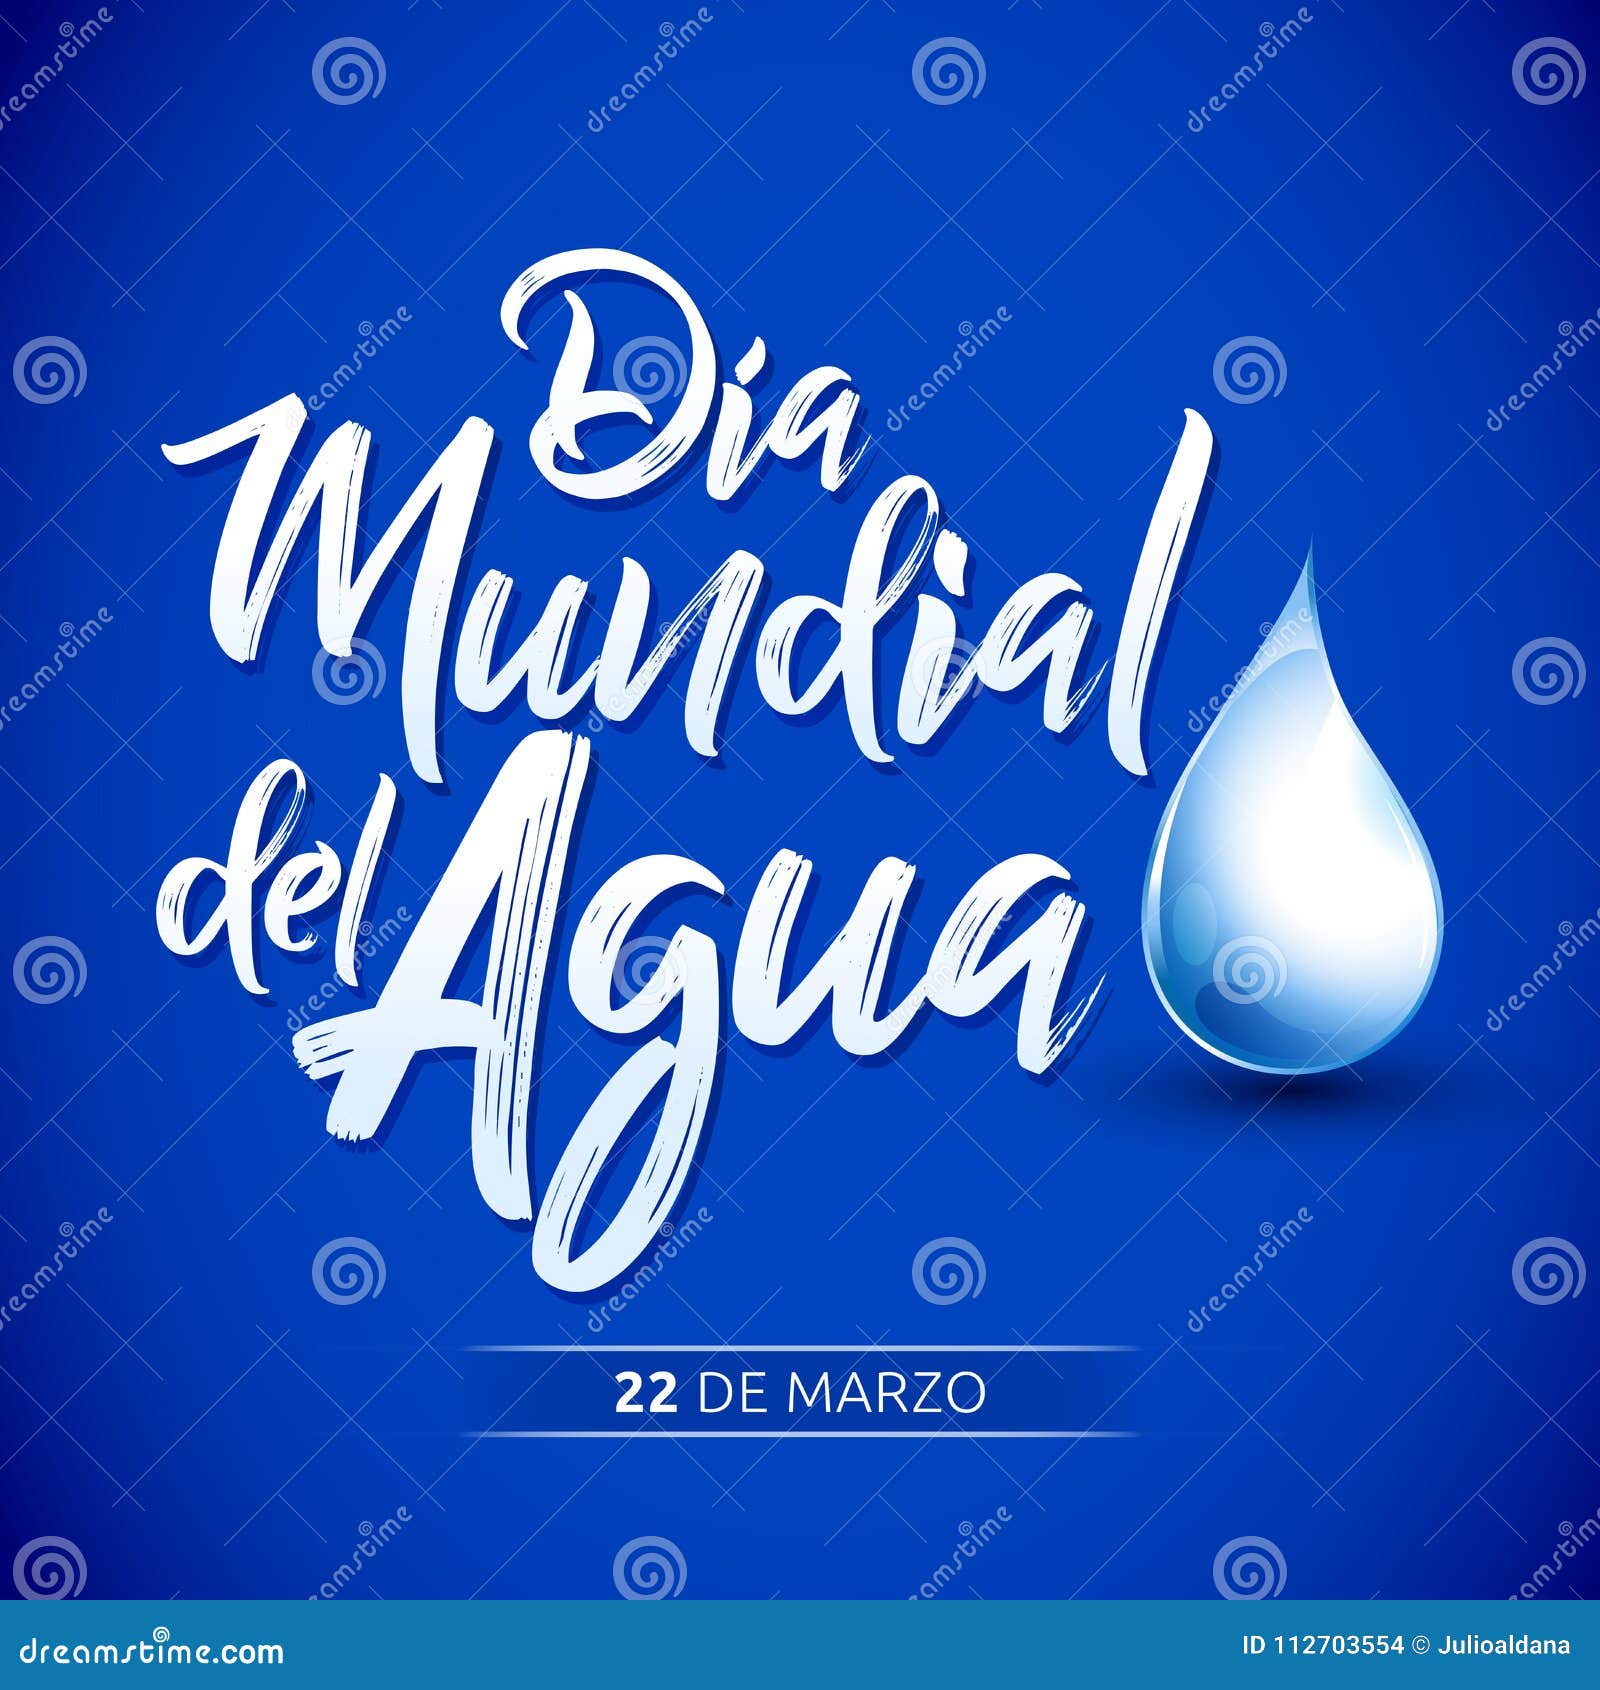 dia mundial del agua, 22 de marzo, world water day, march 22 spanish text